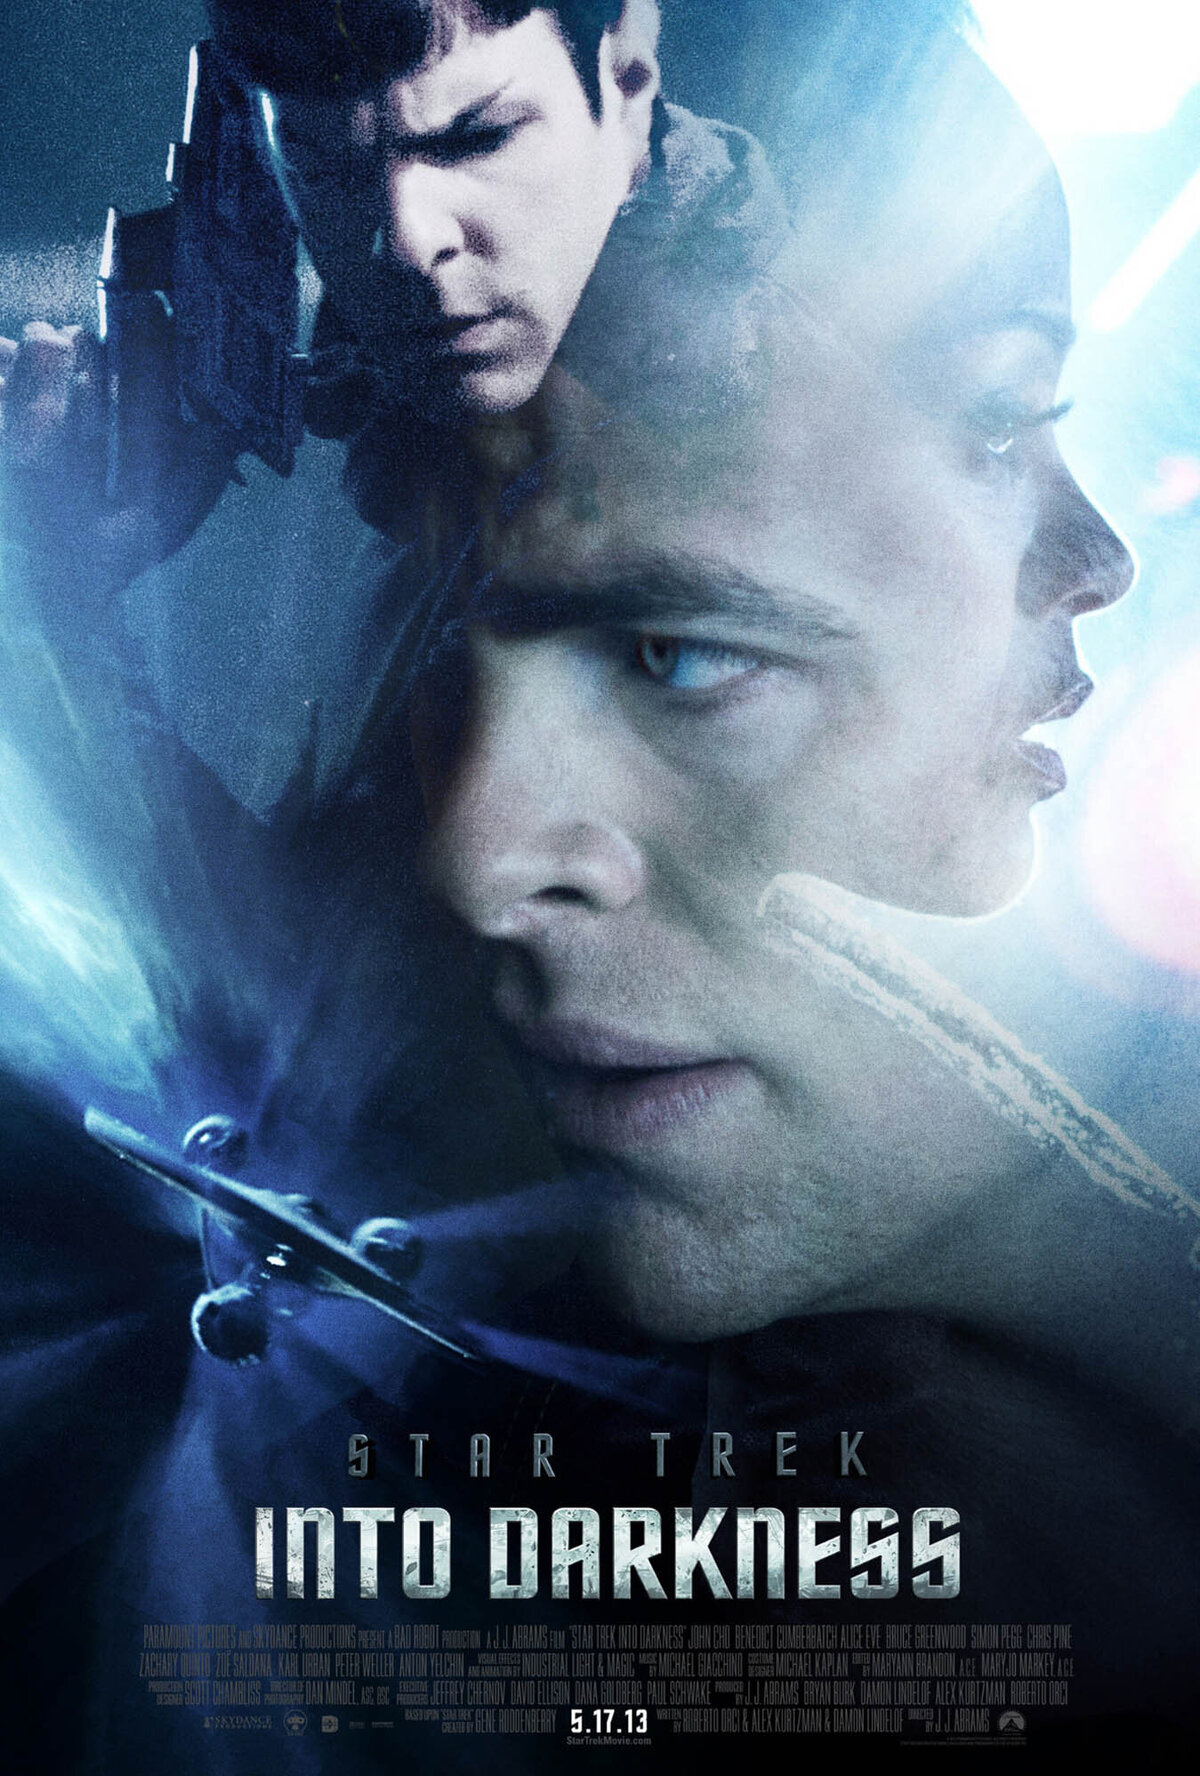 Star Trek 2 design poster